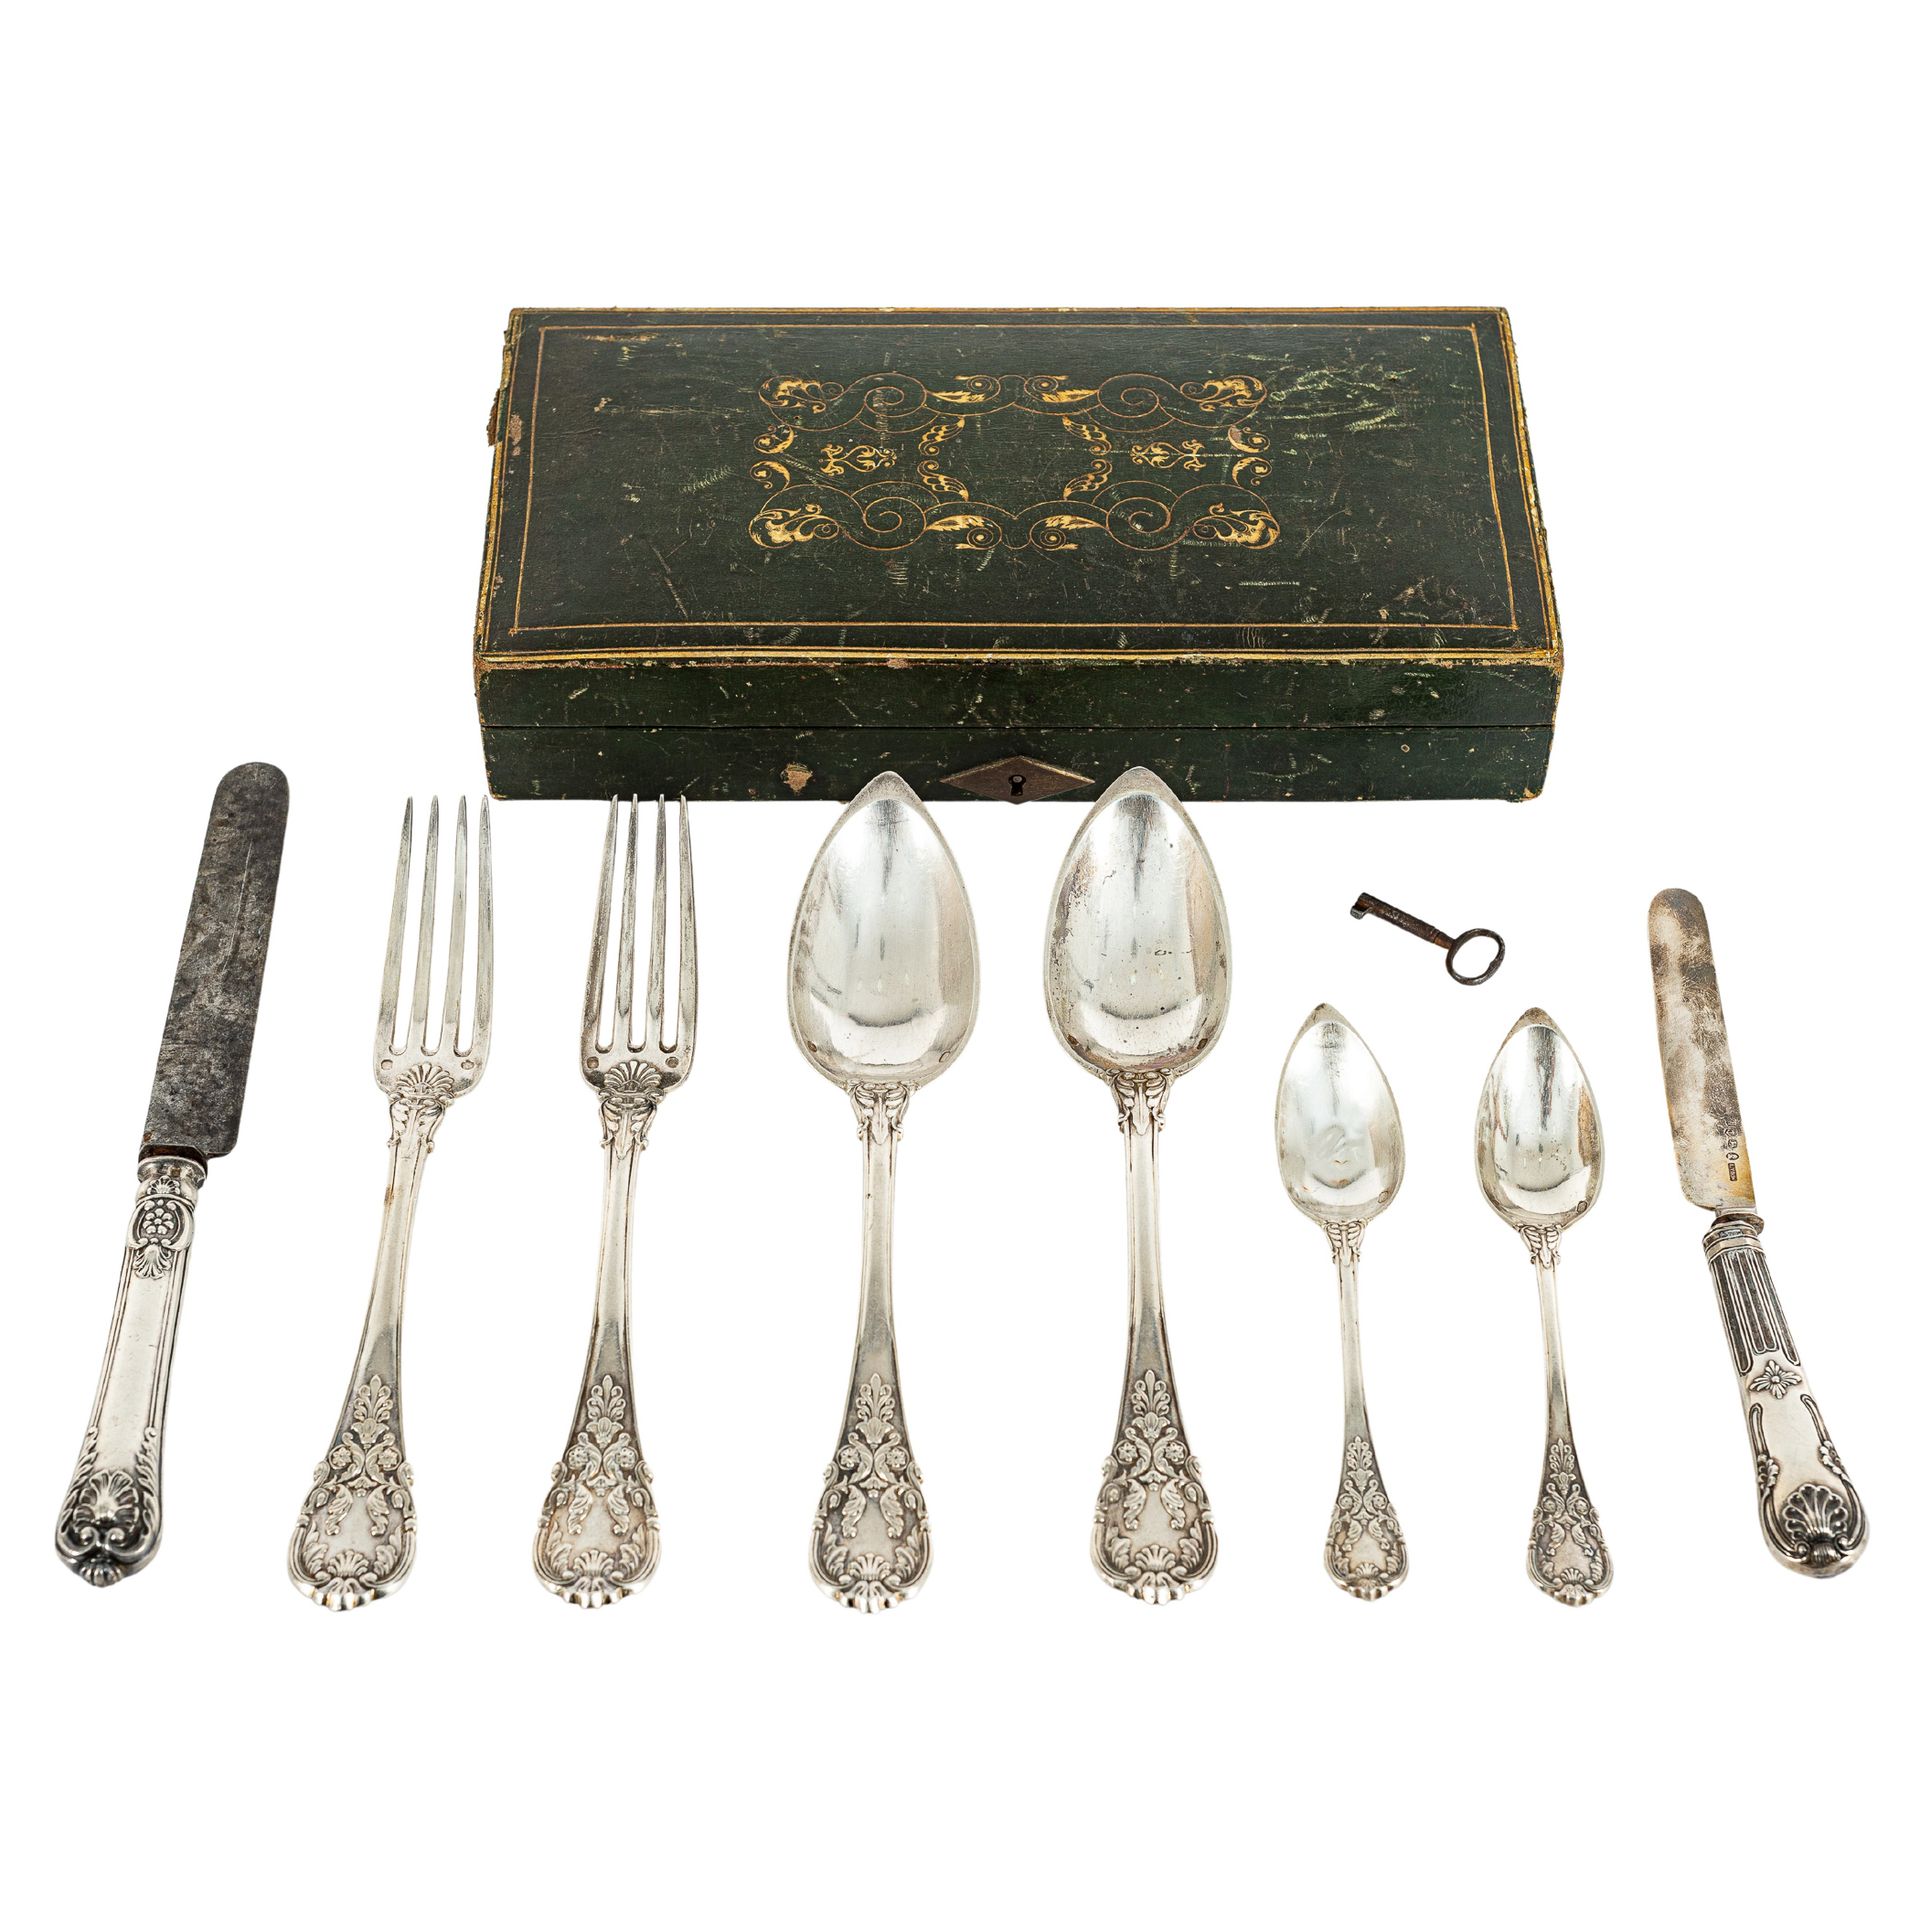 Charles Salomon Mahler 查尔斯-萨洛蒙-马勒银质打孔甜点套装。巴黎，1819-1838。

用于出口的塞雷斯冲床。包括两个勺子，两个刀子，&hellip;